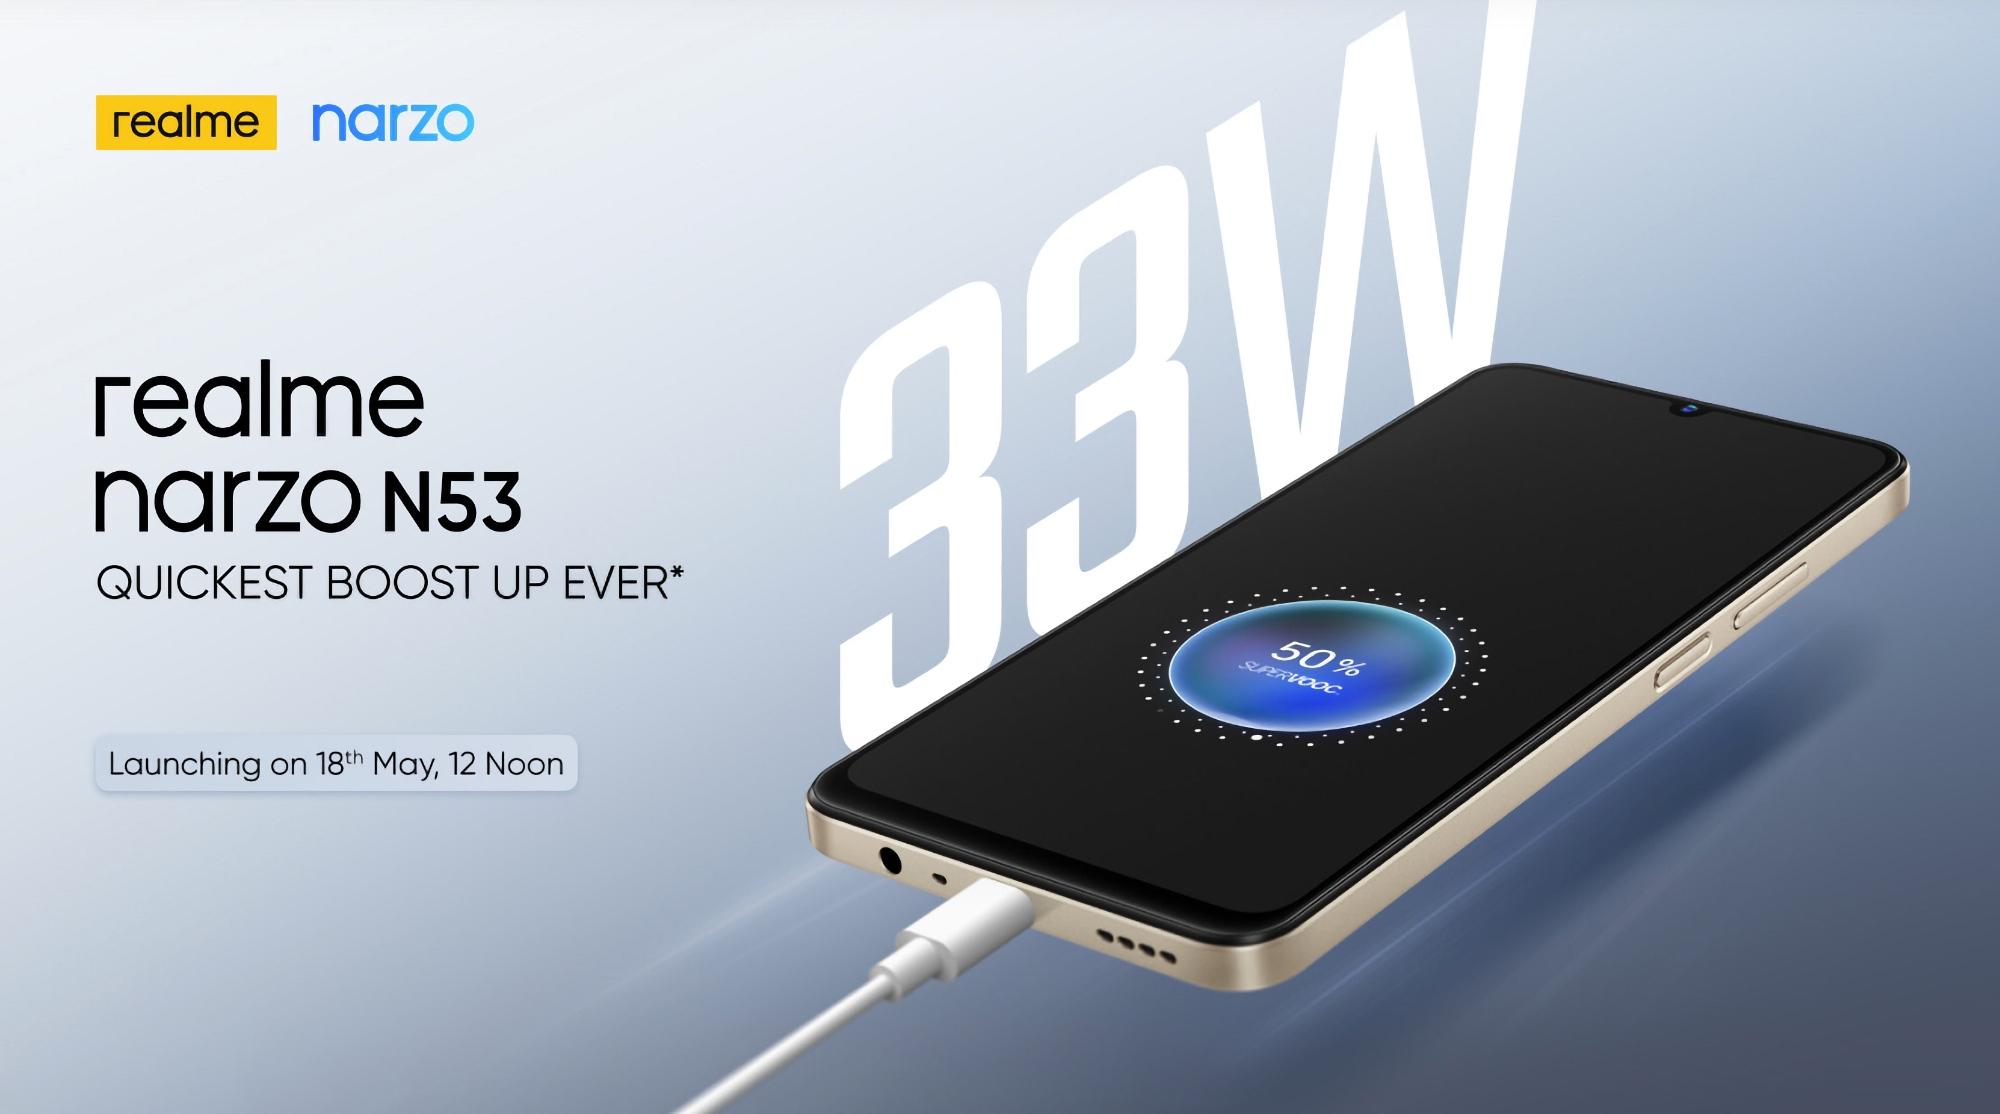 realme presenterà Narzo N53: uno smartphone economico con schermo LCD, batteria da 5000mAh e 33W di ricarica il 18 maggio